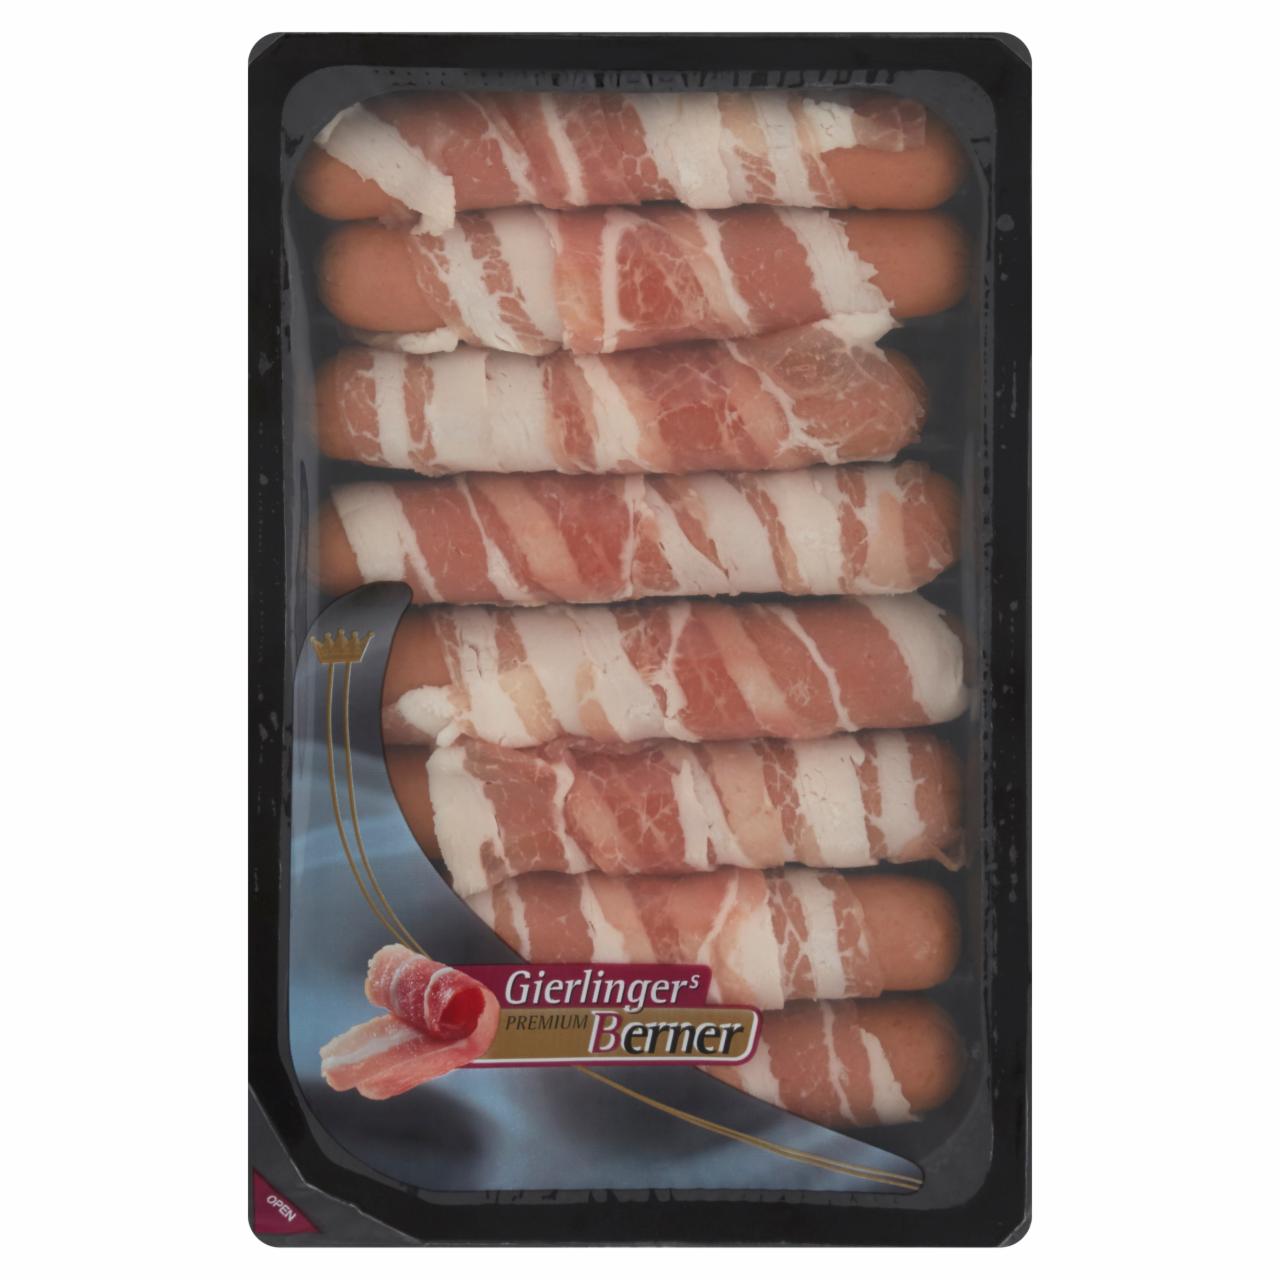 Képek - Gierlinger's Mini berner baconbe göngyölt sajtos virsli 8 db/csomag 250 g